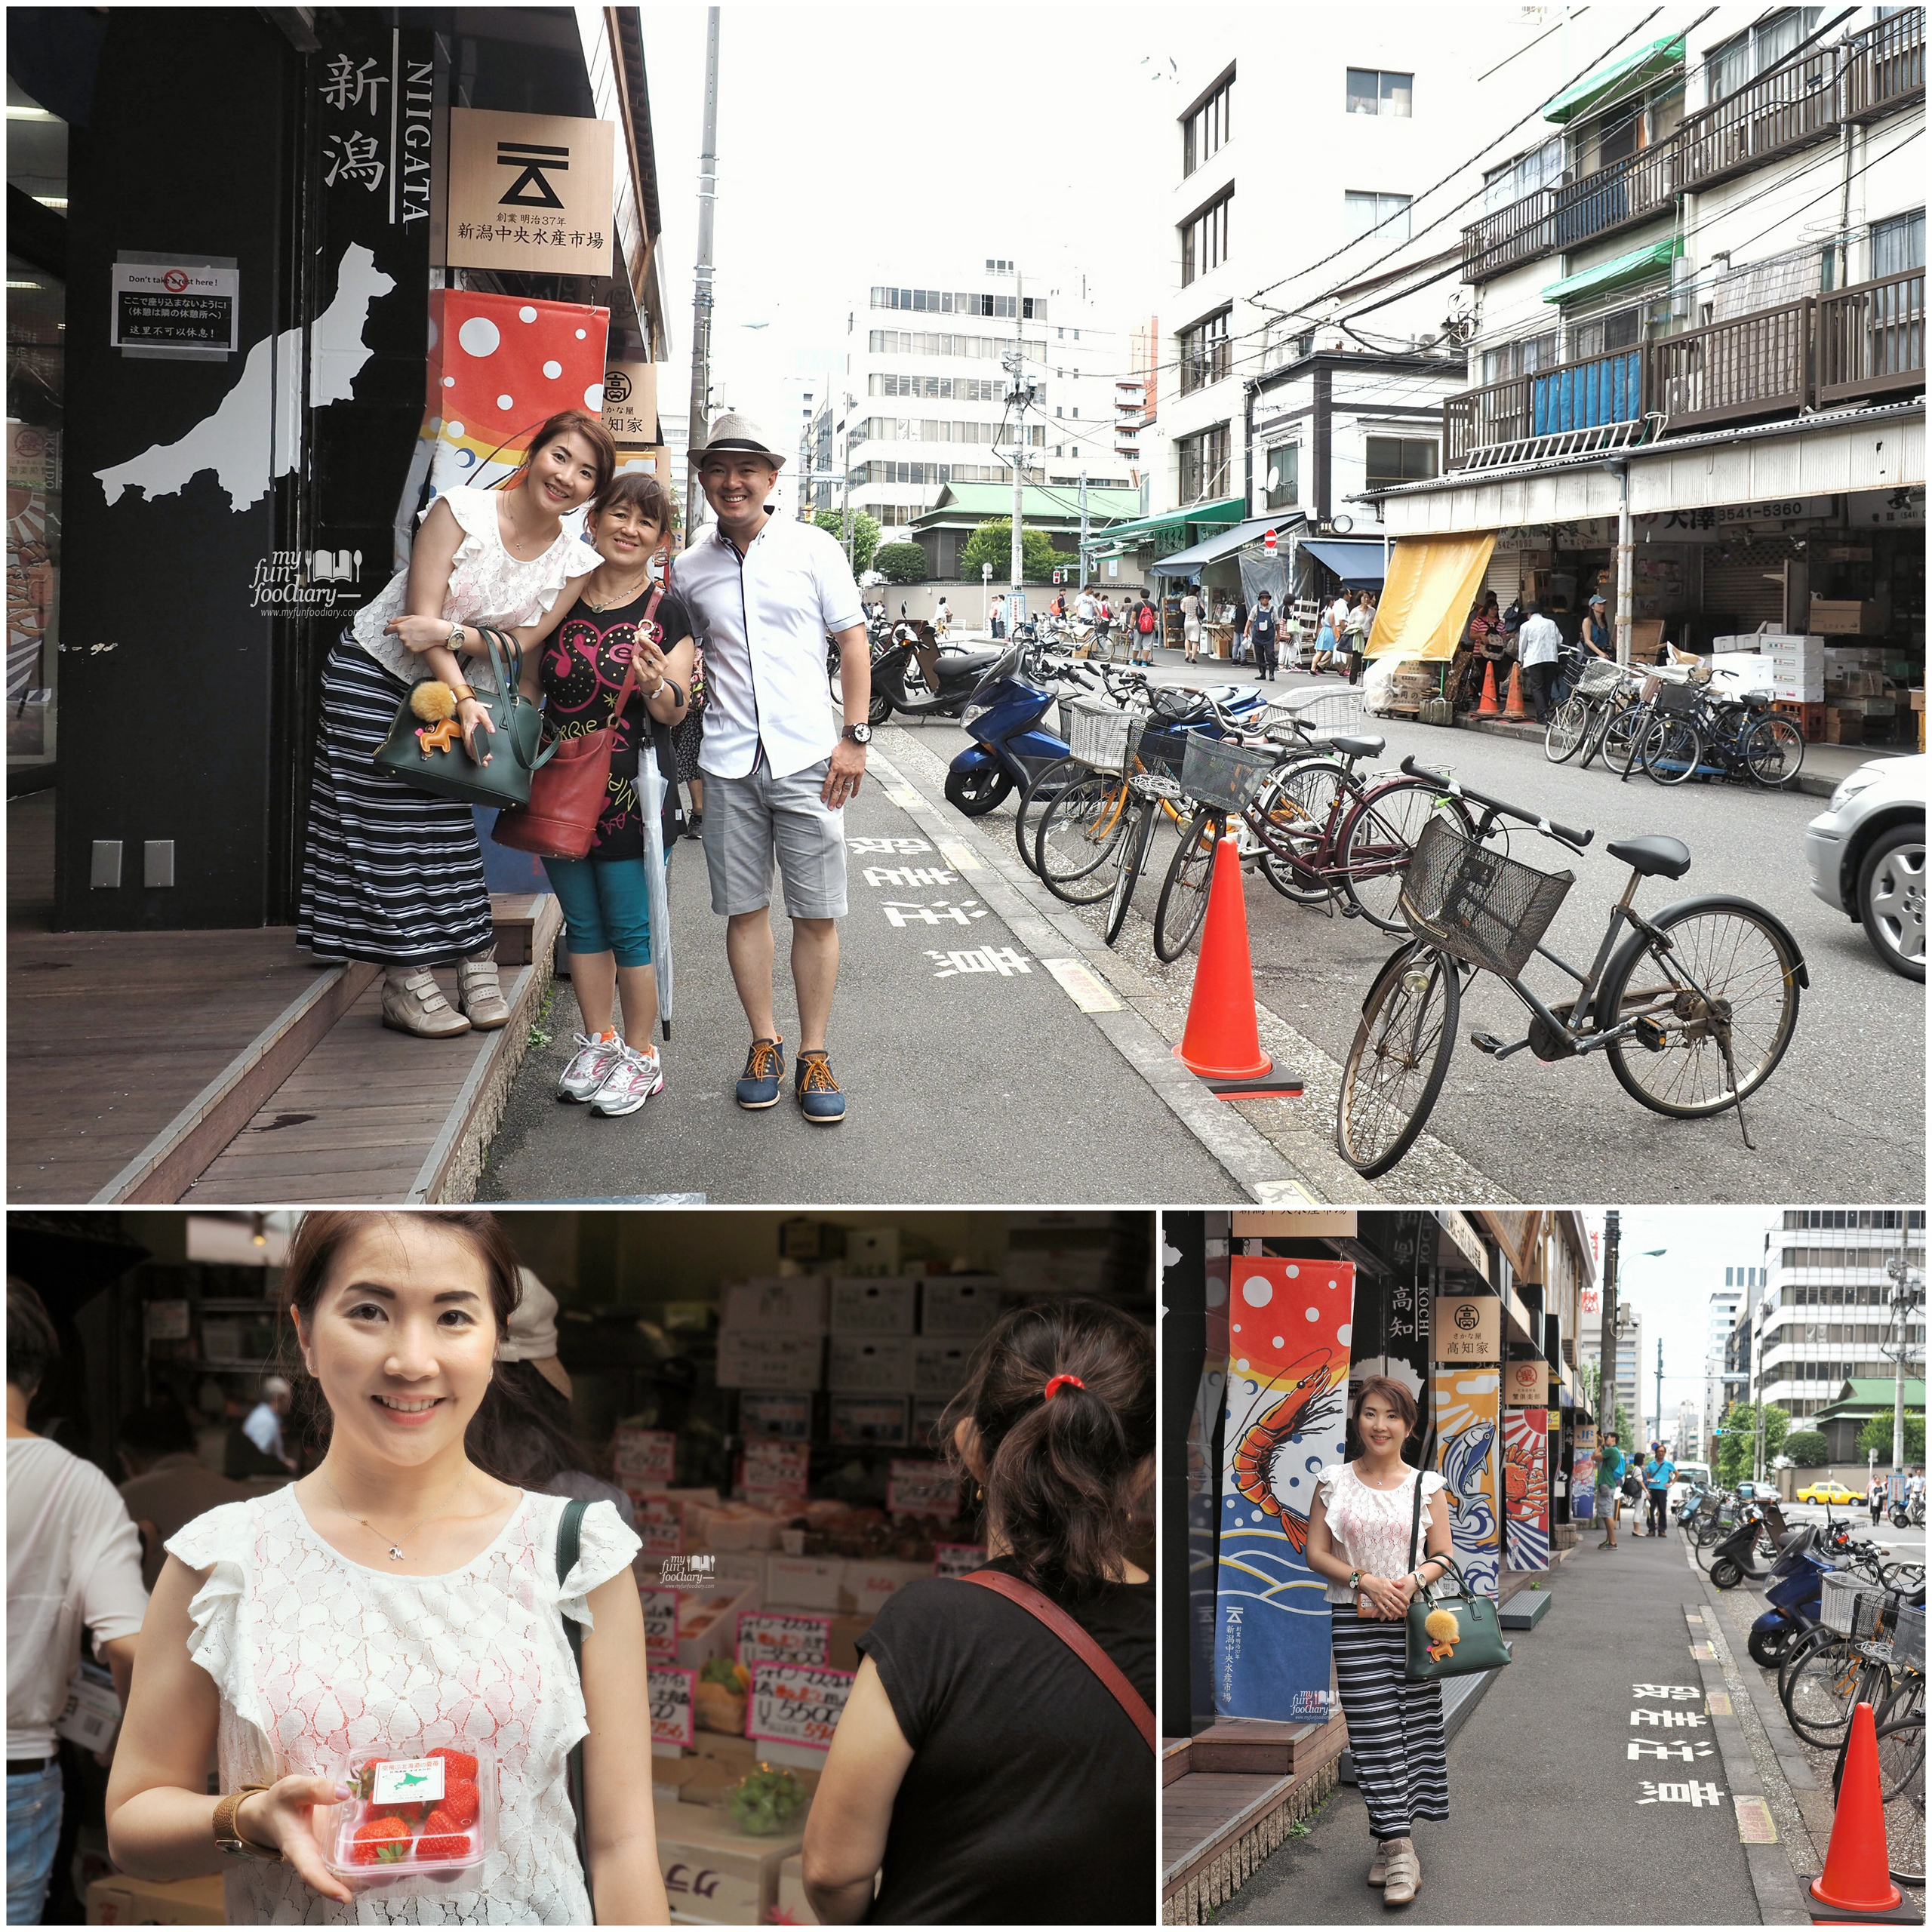 Had so much fun at Tsukiji Market by Myfunfoodiary